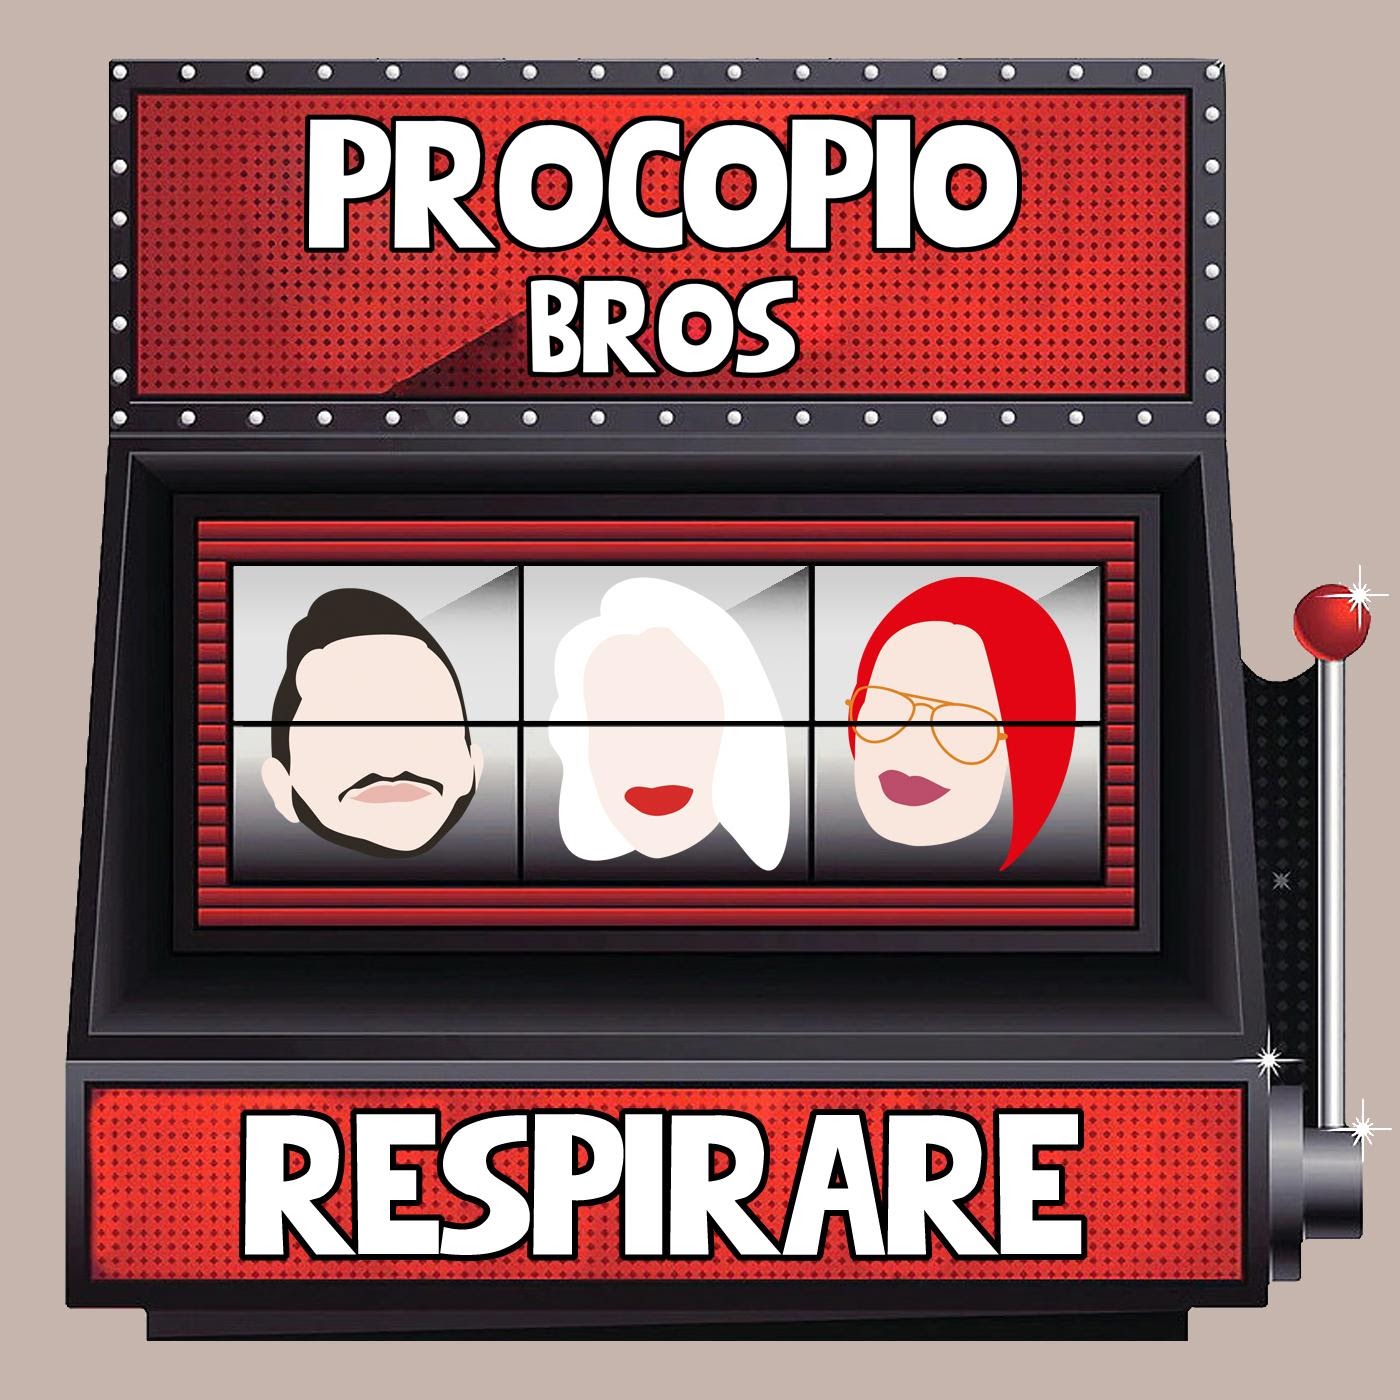 Procopio Bros “Respirare” : è uscito il 10 gennaio il singolo d’esordio del trio di fratelli torinesi